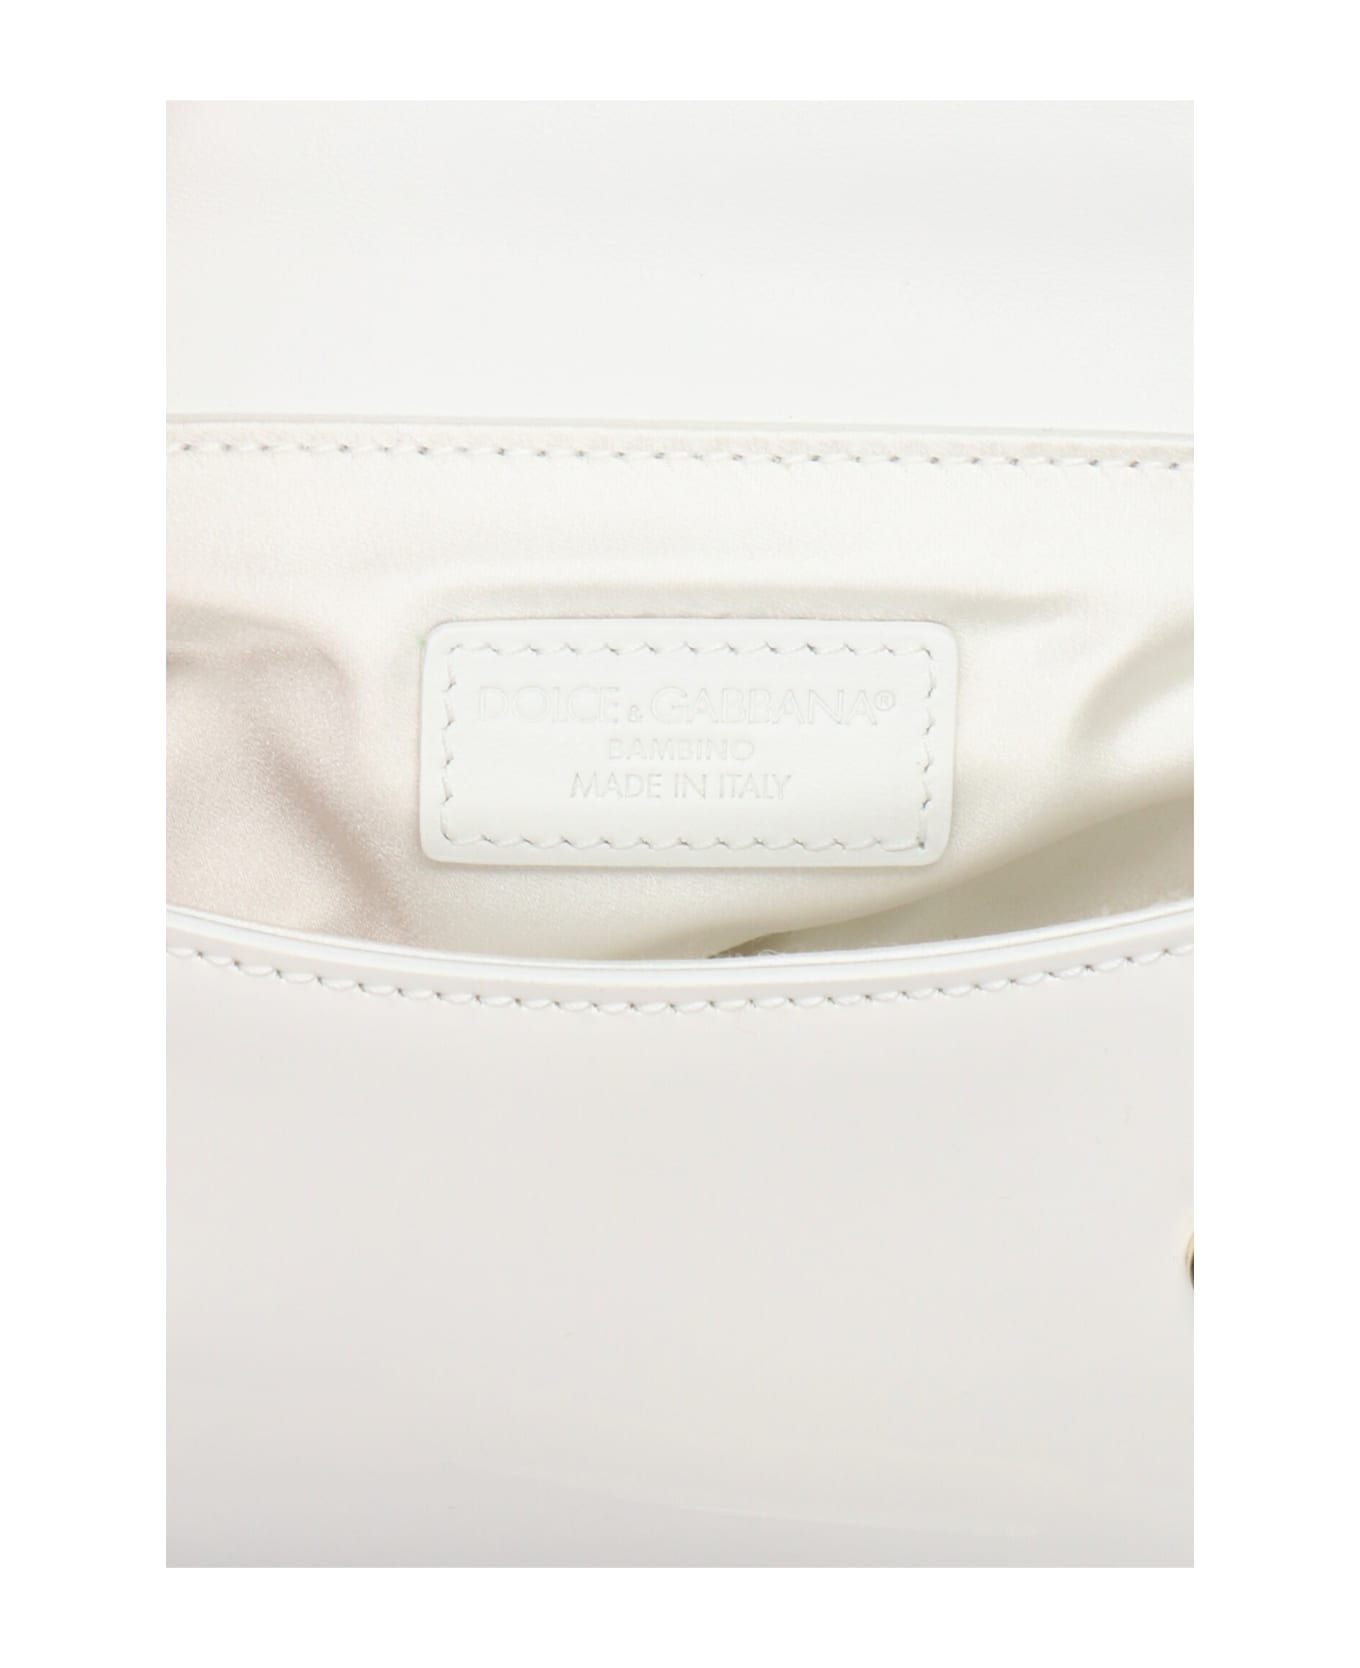 Dolce & Gabbana 'sicily' Mini Handbag - White